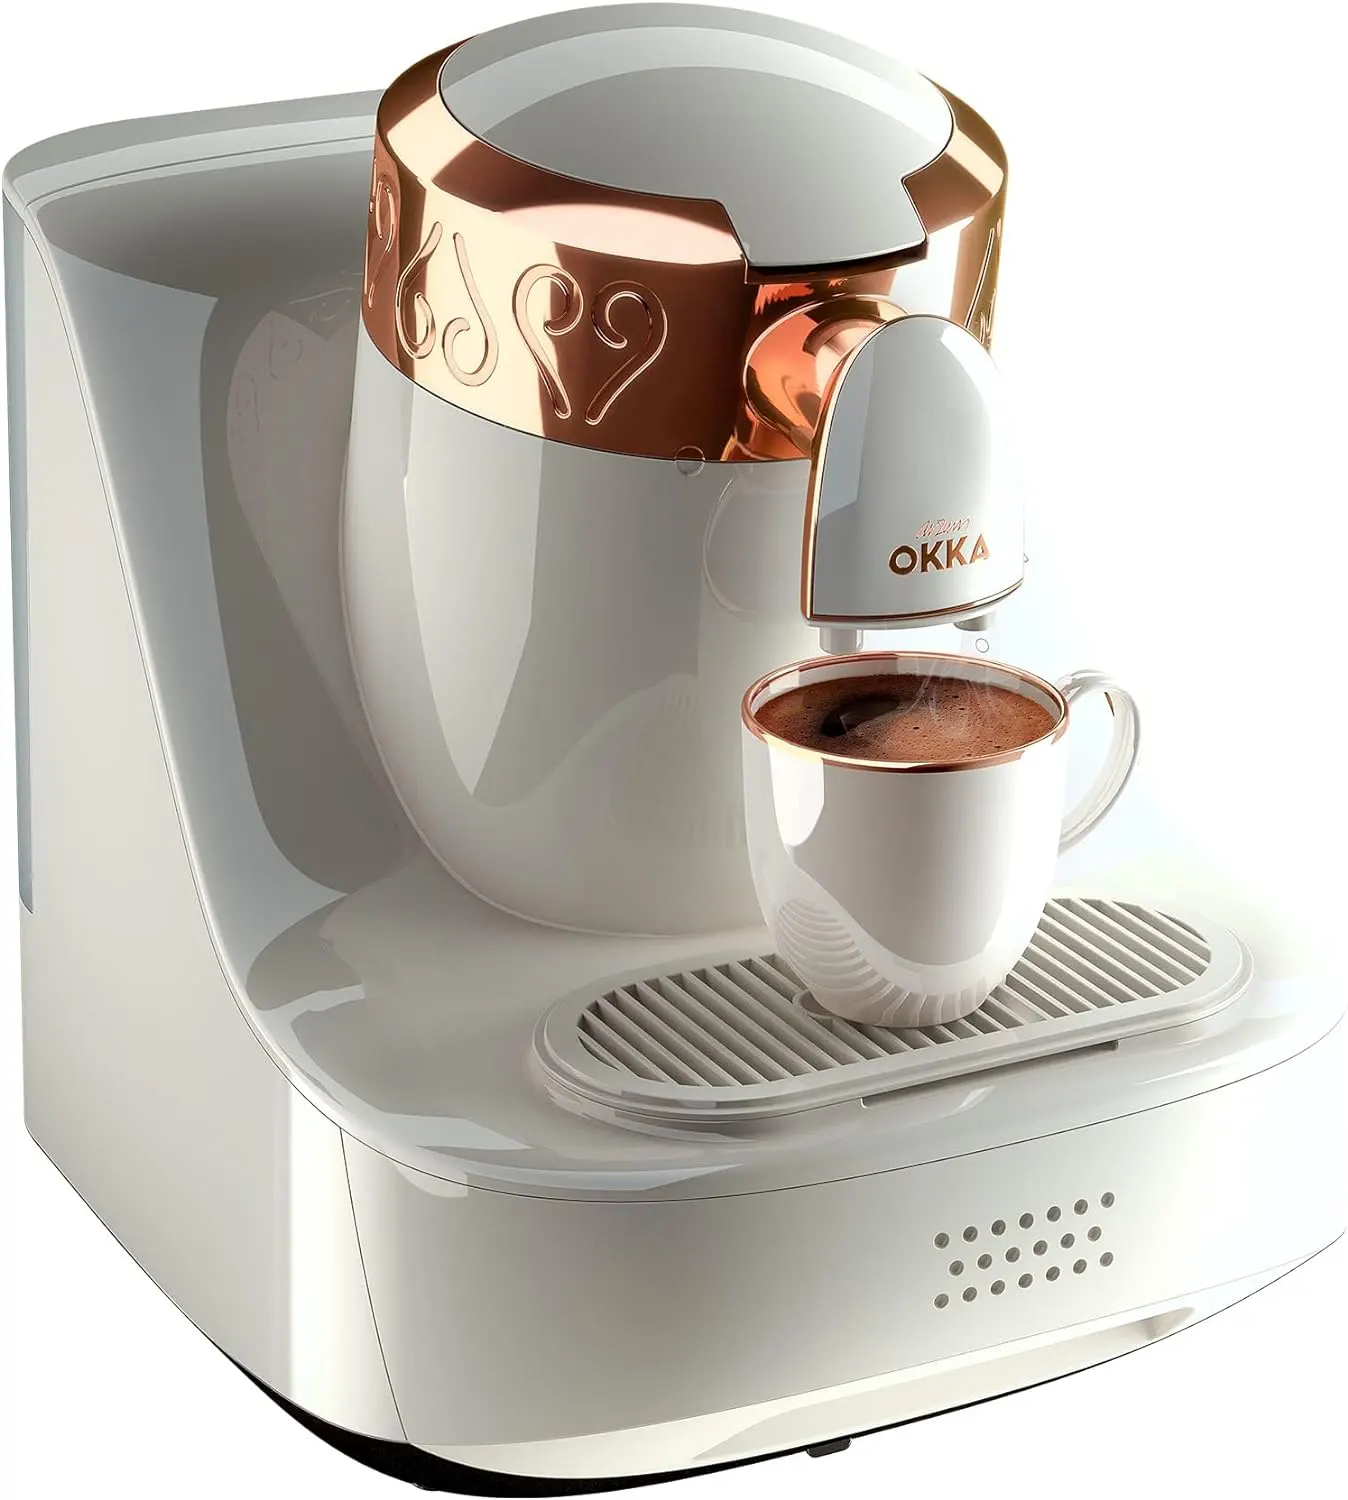 ماكينة القهوة التركي ارزوم اوكا، 710 وات، أبيض× نحاسي،OK001